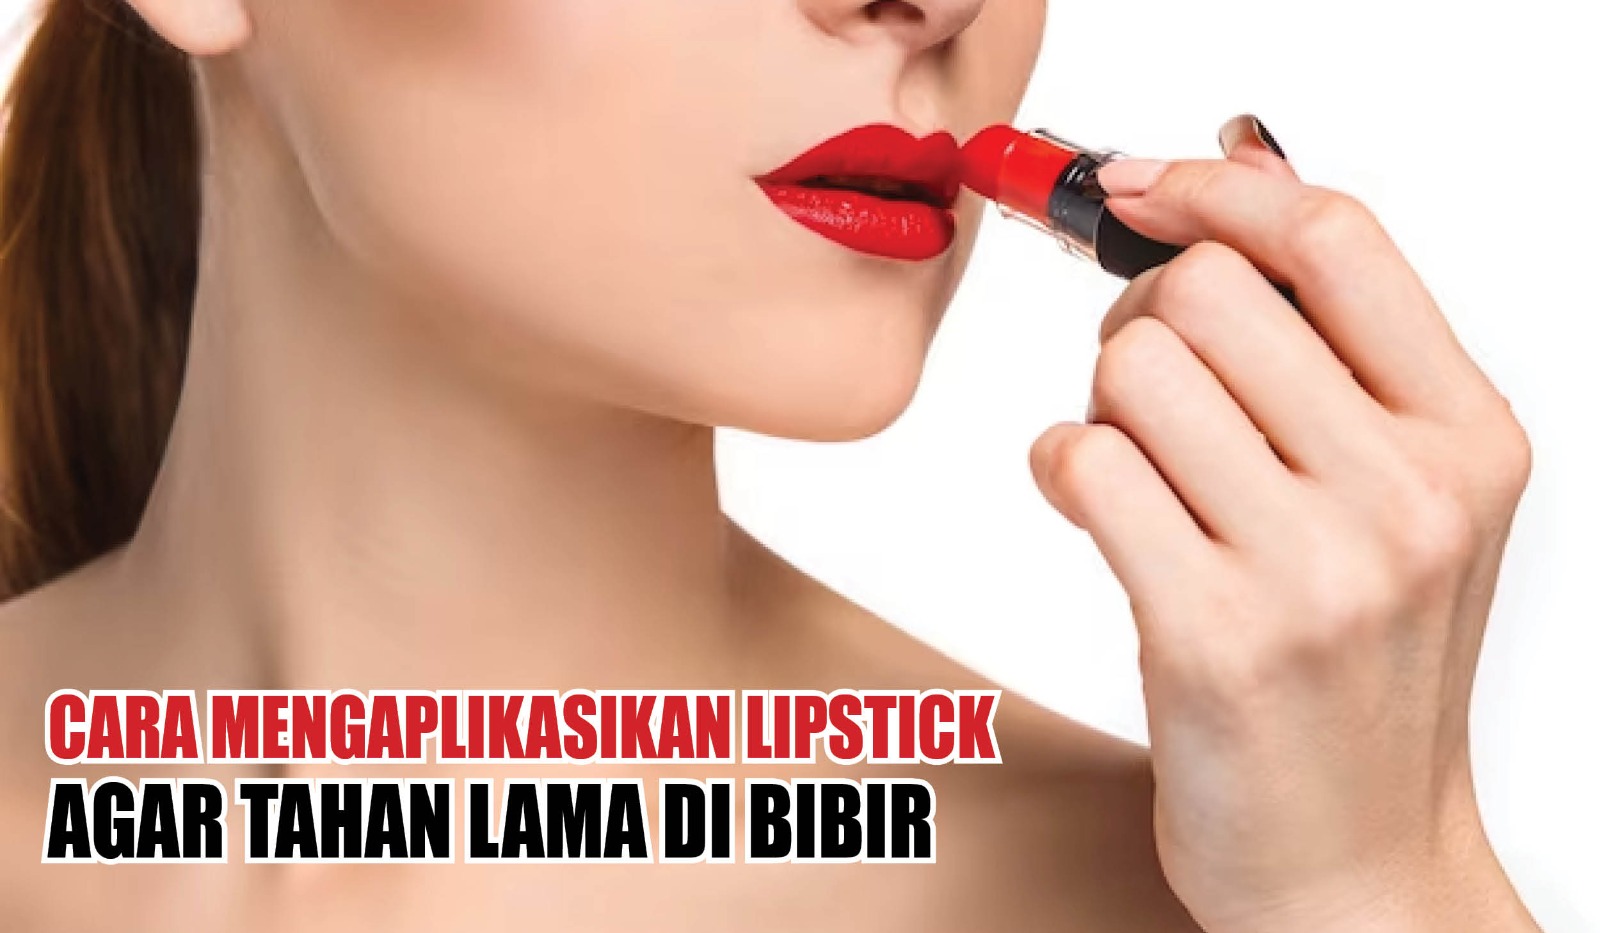 Para Ledies Jangan Tidak Tahu Ya! Ini Cara Mengaplikasikan Lipstik agar Bibir Tetap Fresh Seharian